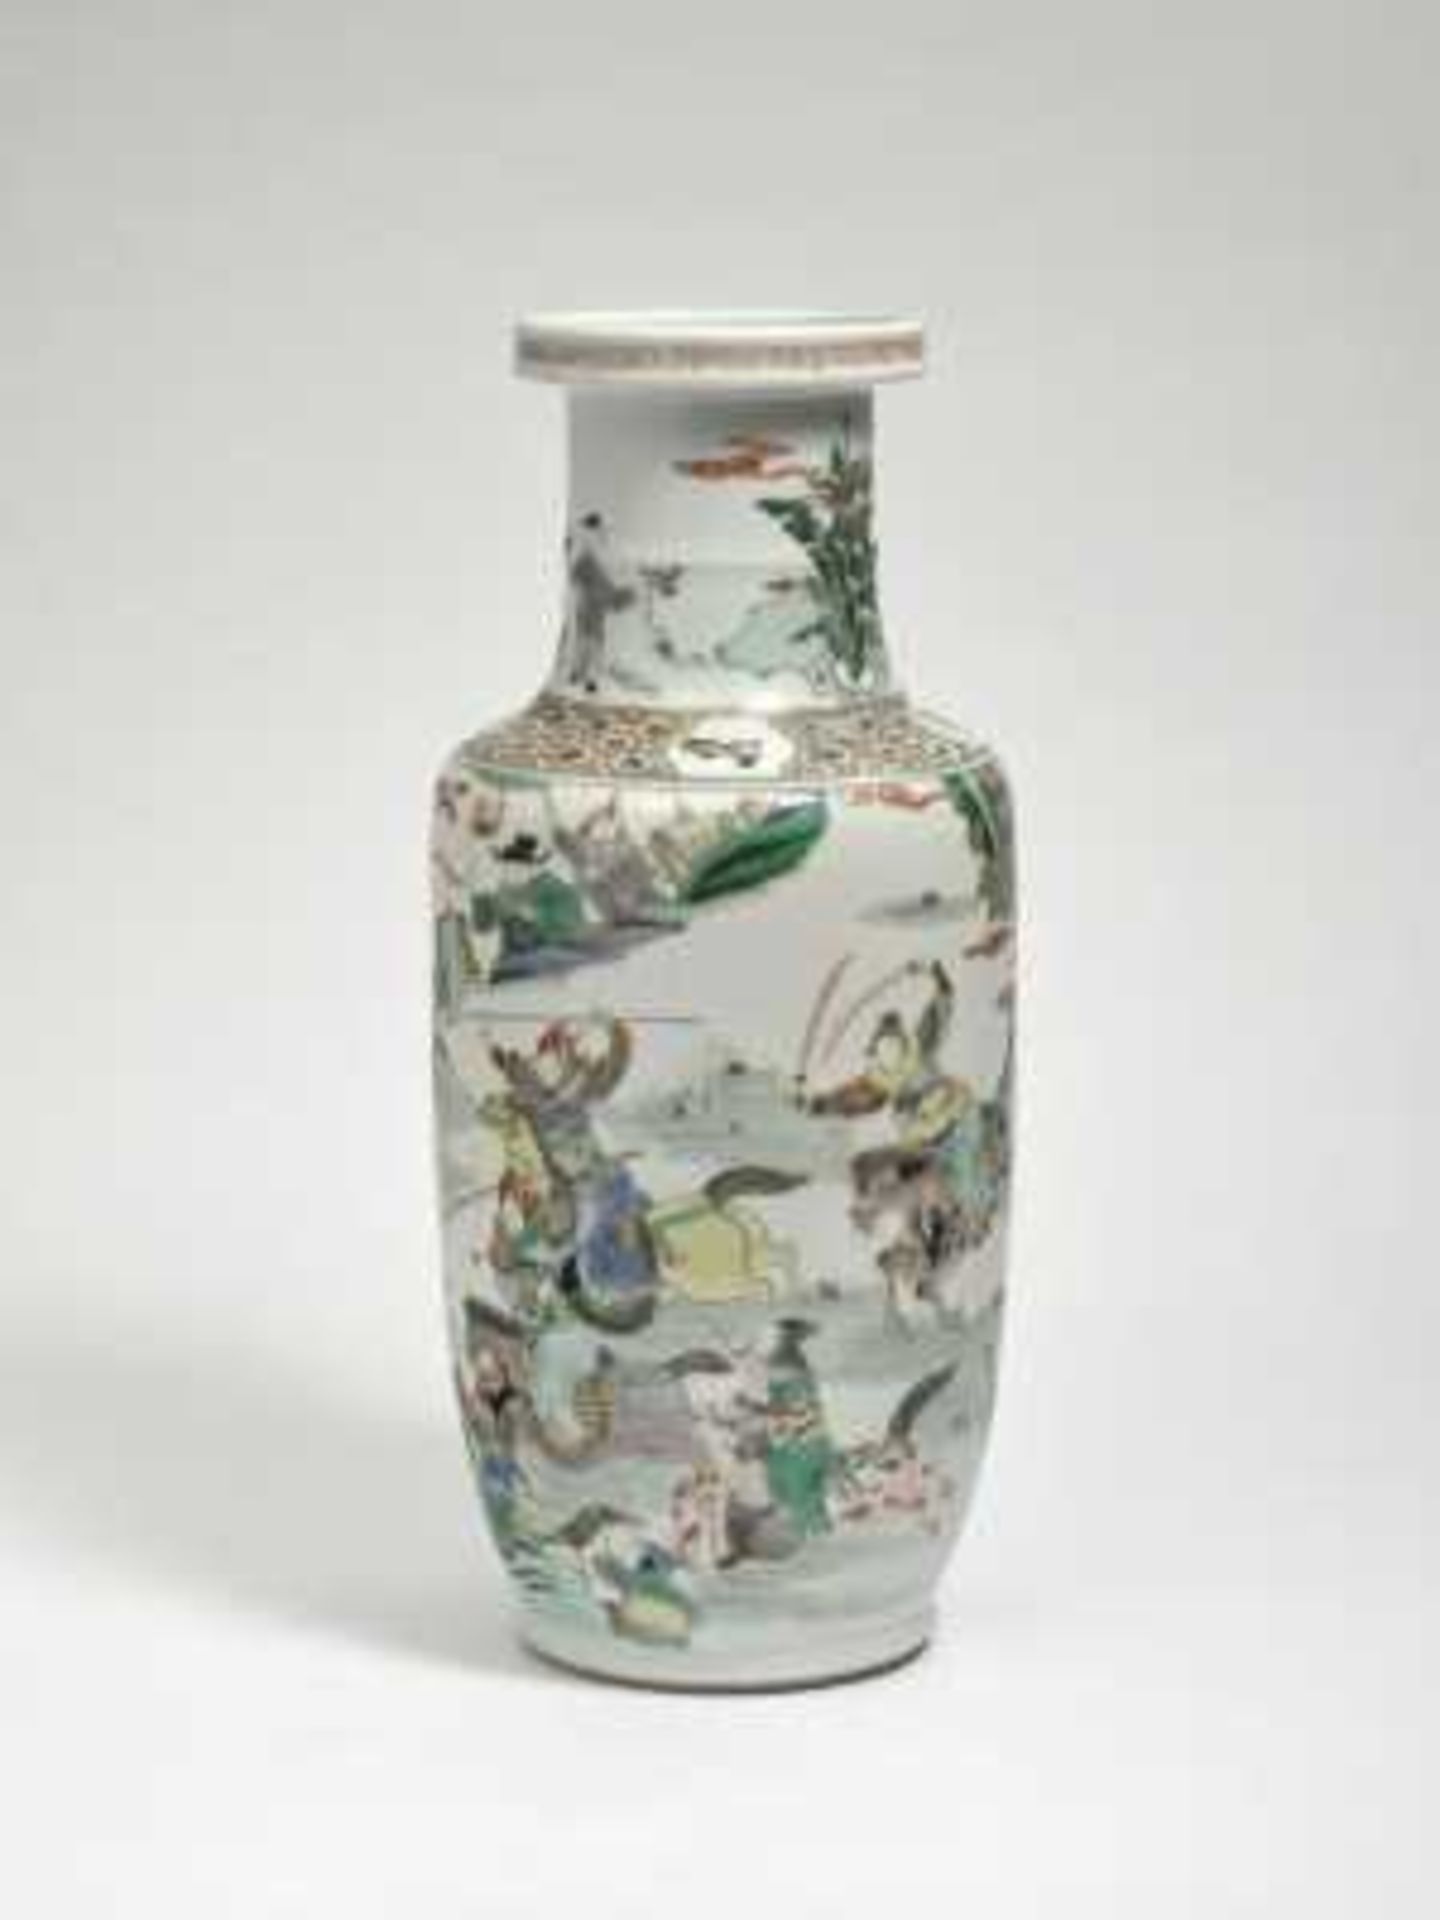 Rouleau-Vase China, 19. Jh. Porzellan. Bunter Dekor im Stil der "famille verte": Reitende Krieger